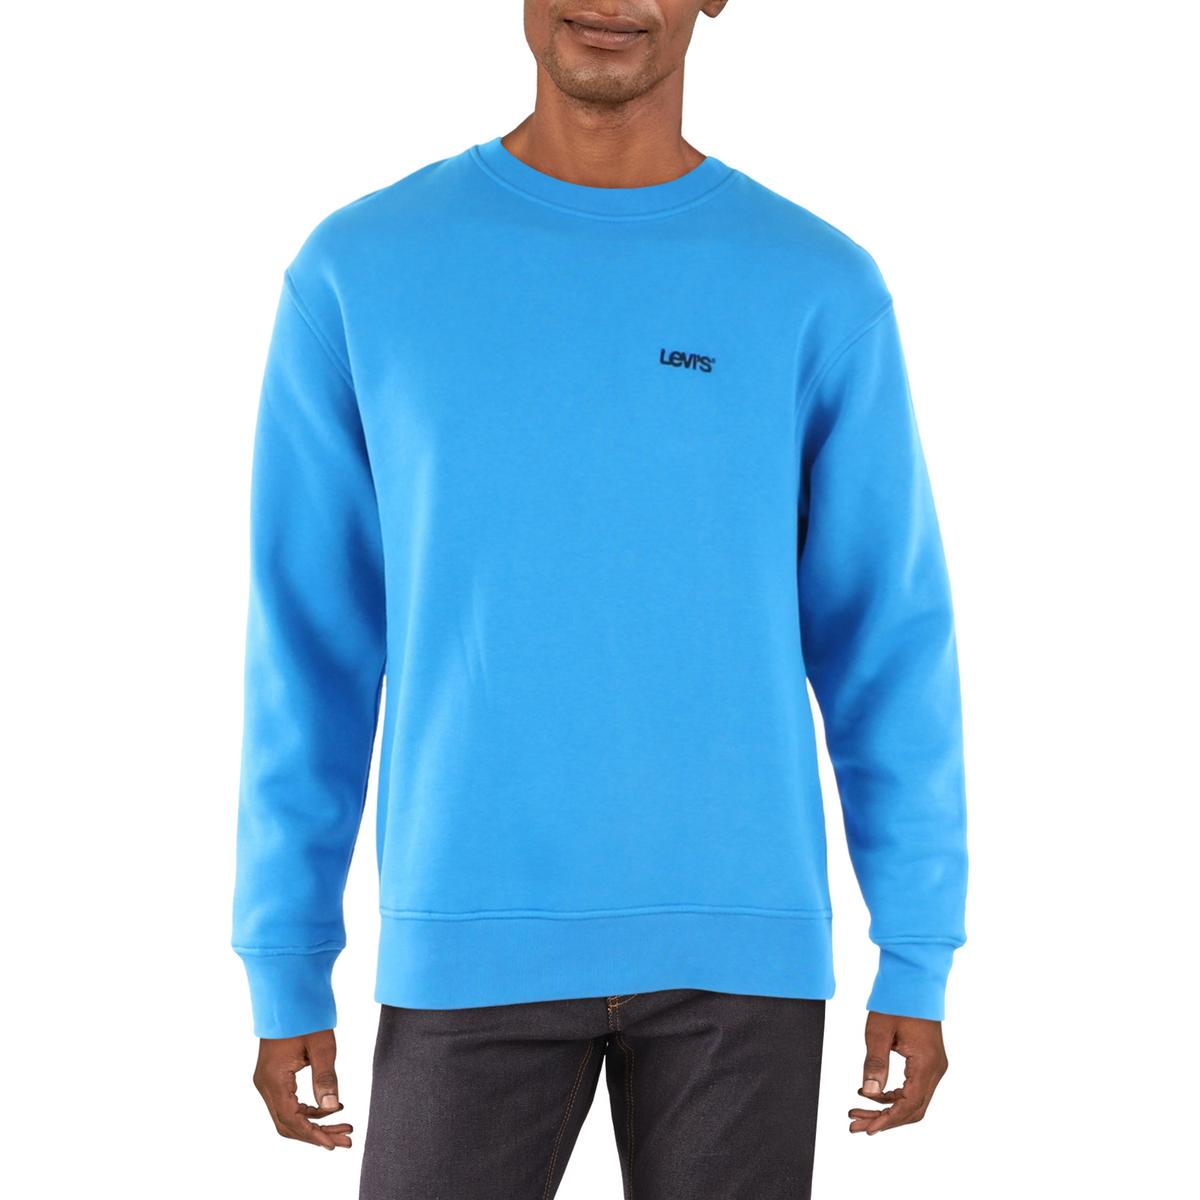 Levi's Mens Crewneck Comfy Sweatshirt